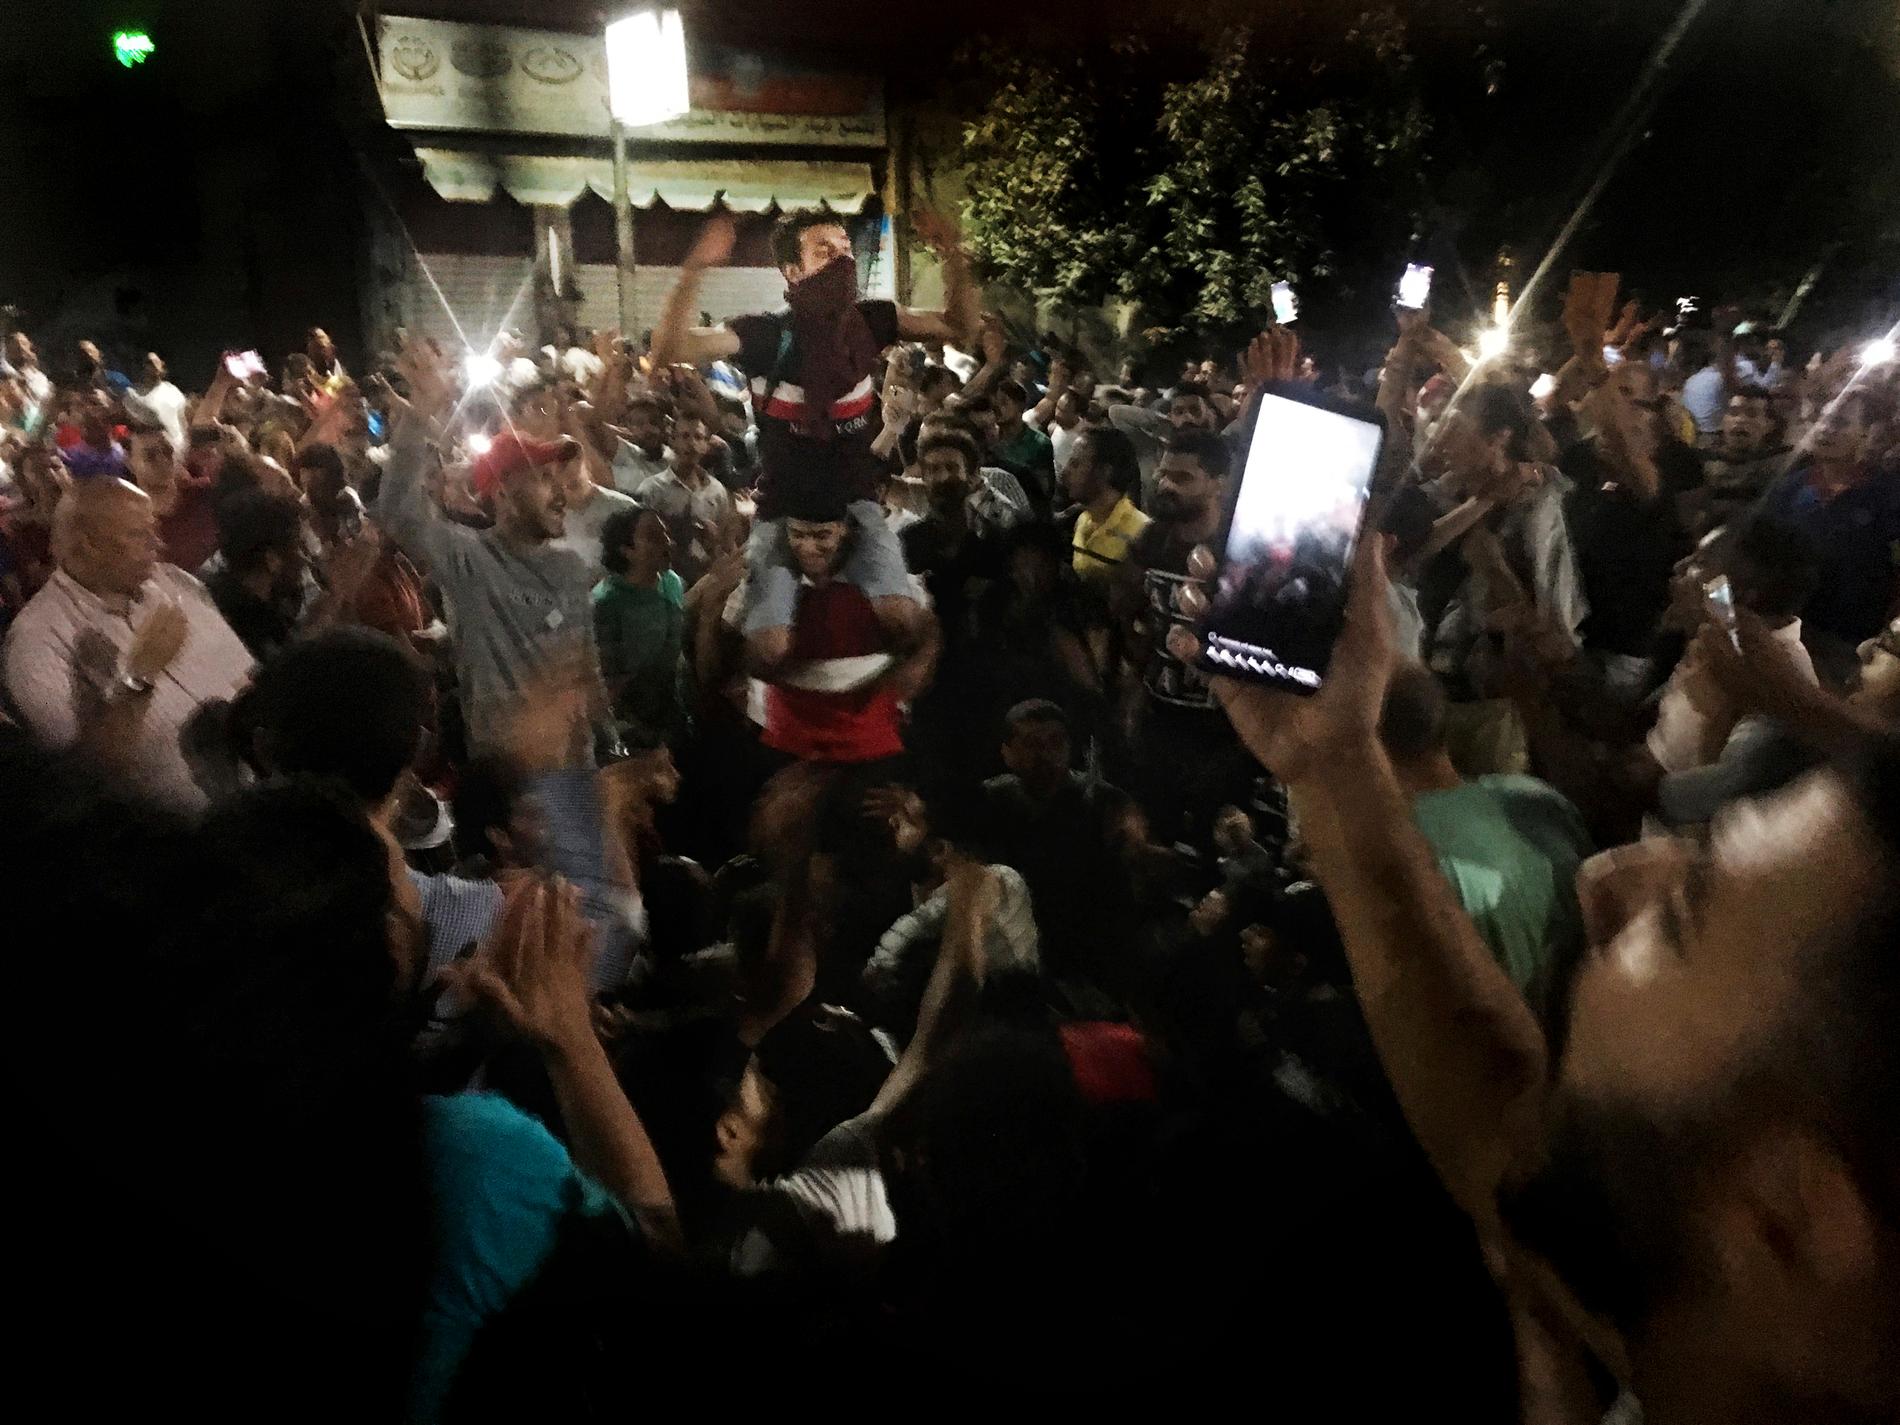 Hundratals människor trotsade demonstrationsförbudet förra fredagen och höll regimkritiska protester i en handfull egyptiska städer. Sedan dess har runt 2000 människor gripits. Arkivbild från fredagen den 20 september 2019.